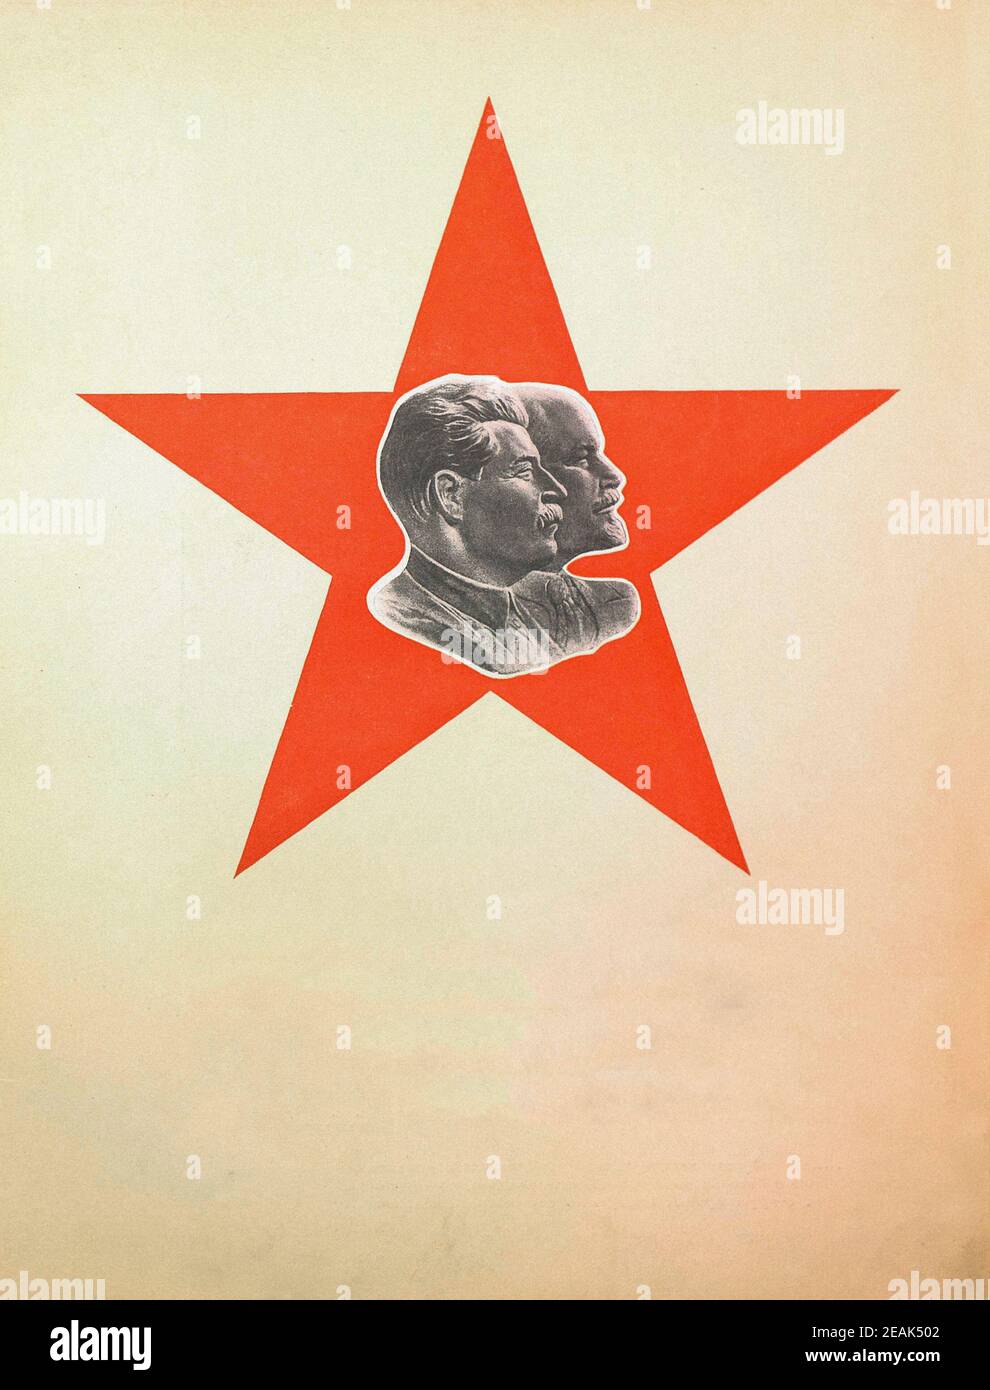 Armée Rouge. Du livre de propagande soviétique de 1937. Les dirigeants soviétiques Lénine et Staline sur le fond de l'étoile rouge. Banque D'Images